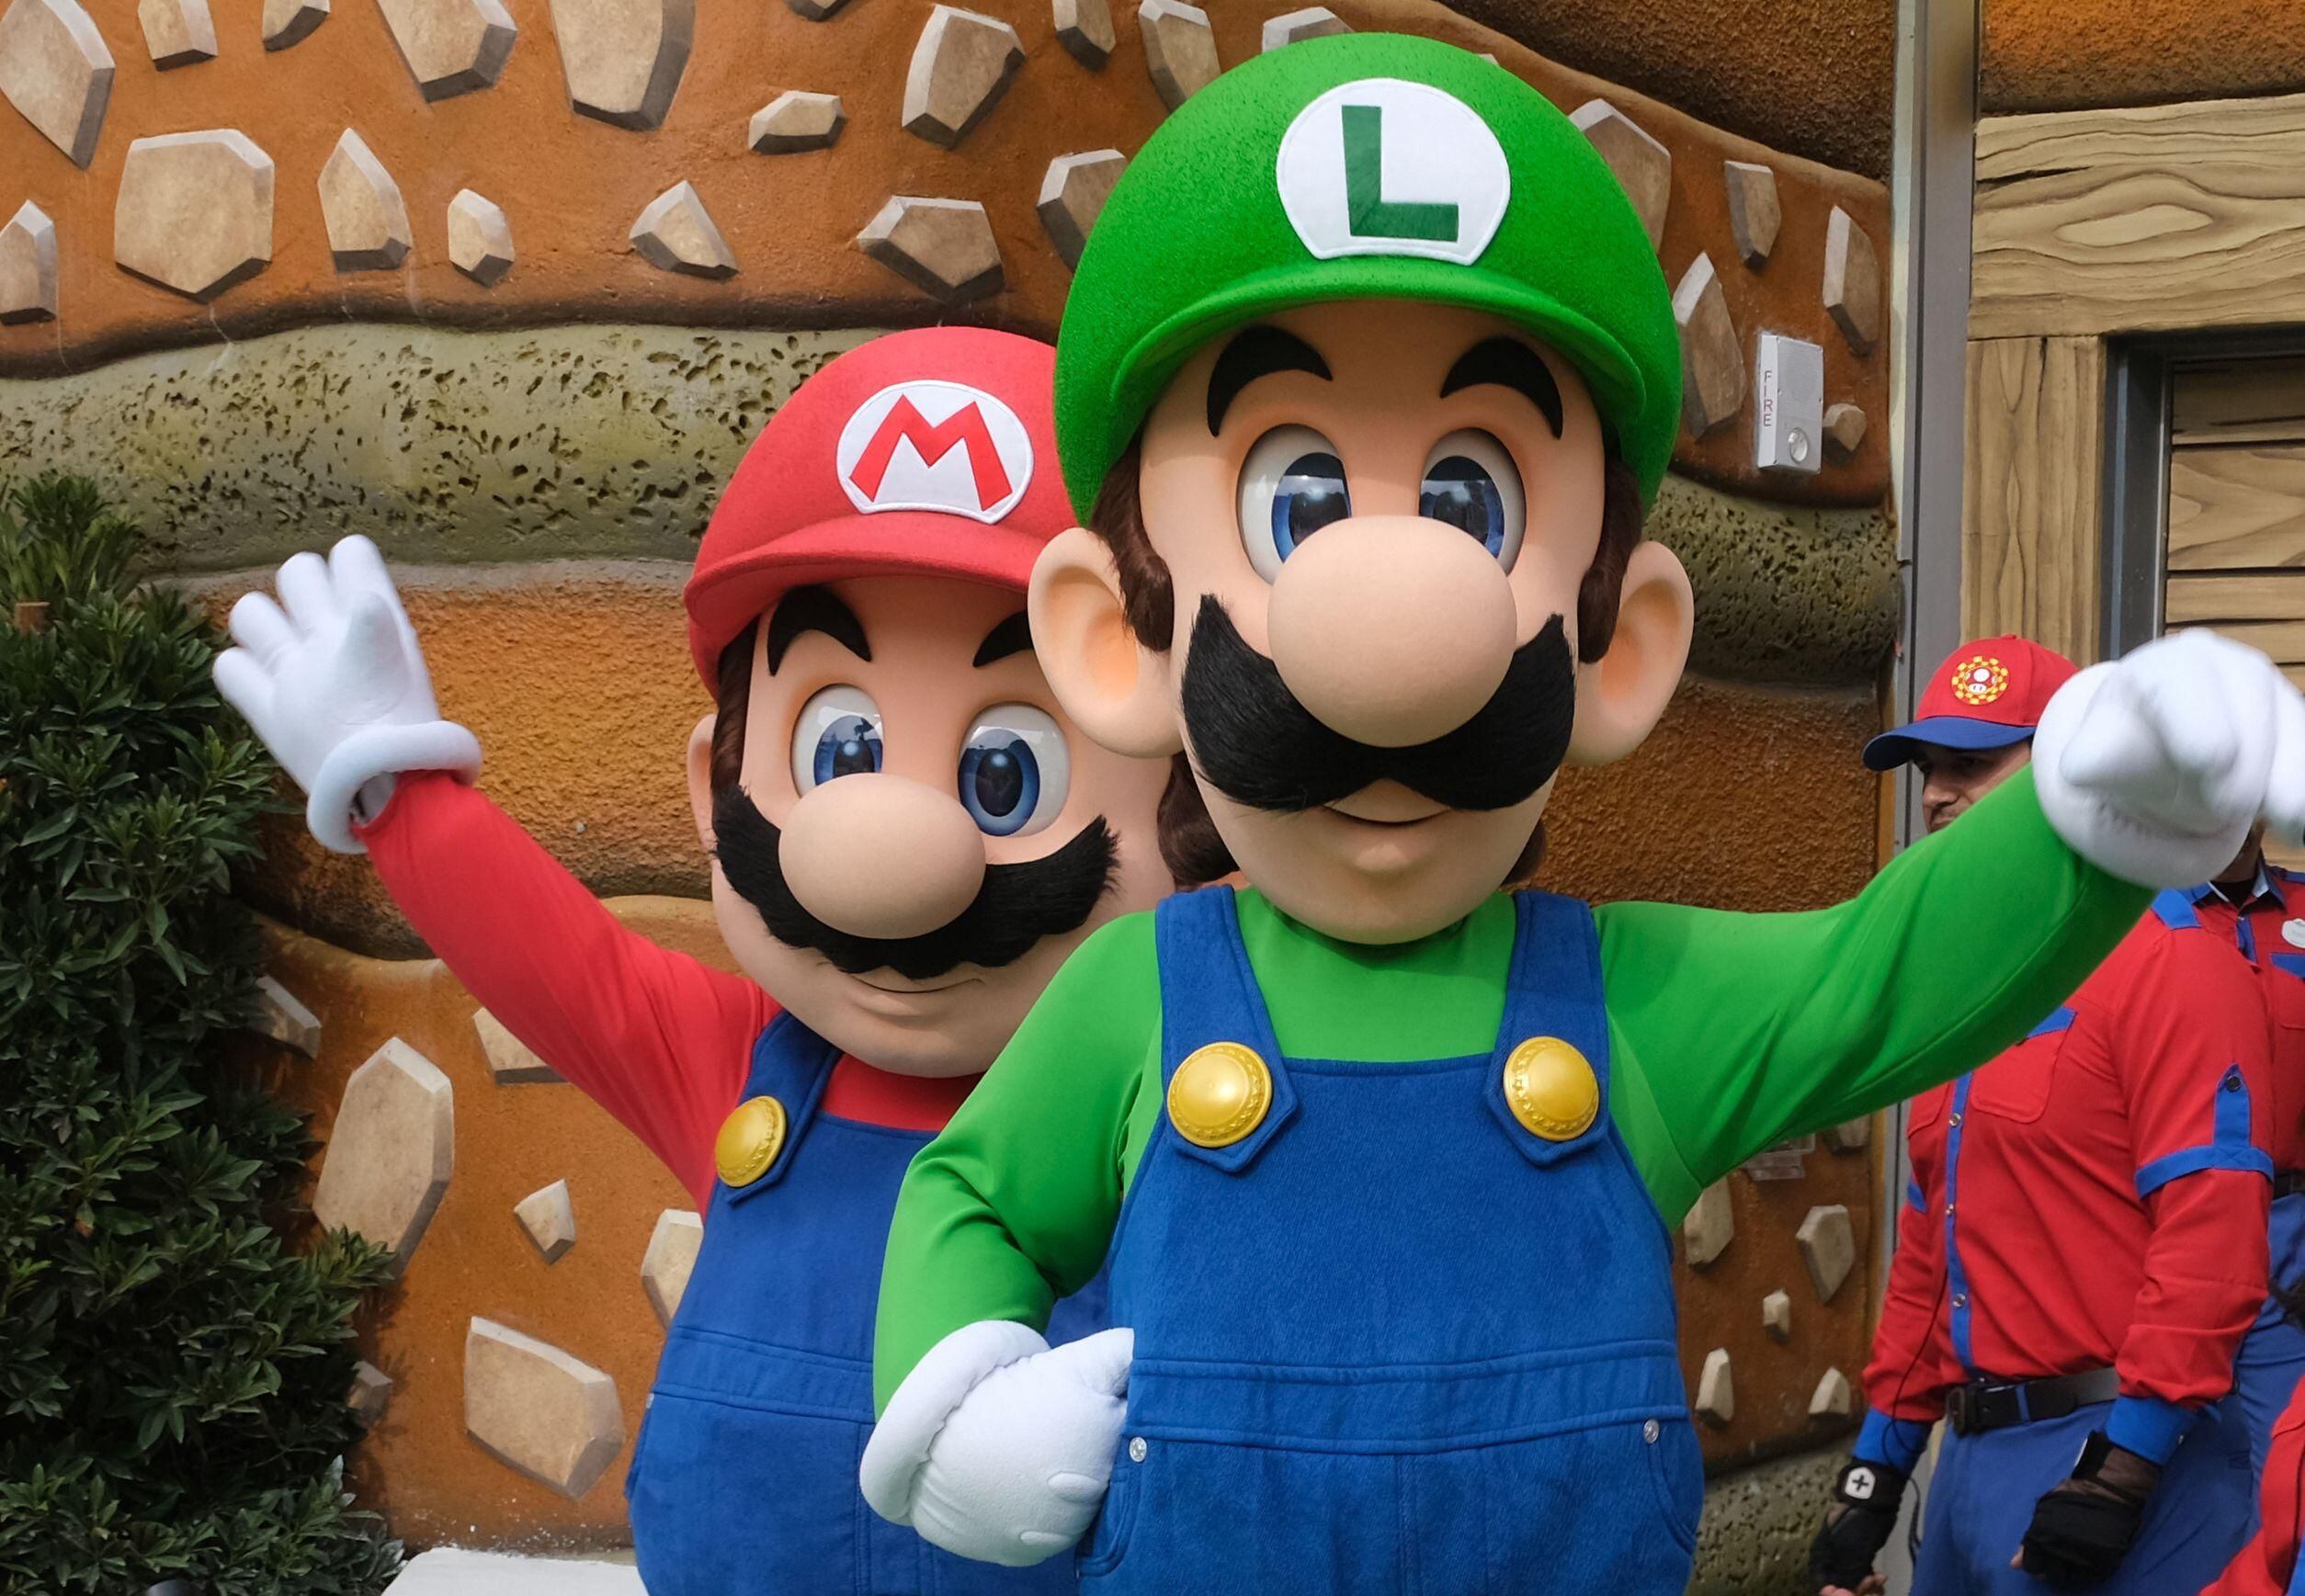 Game na vida real: Nintendo inaugura parque temático neste mês